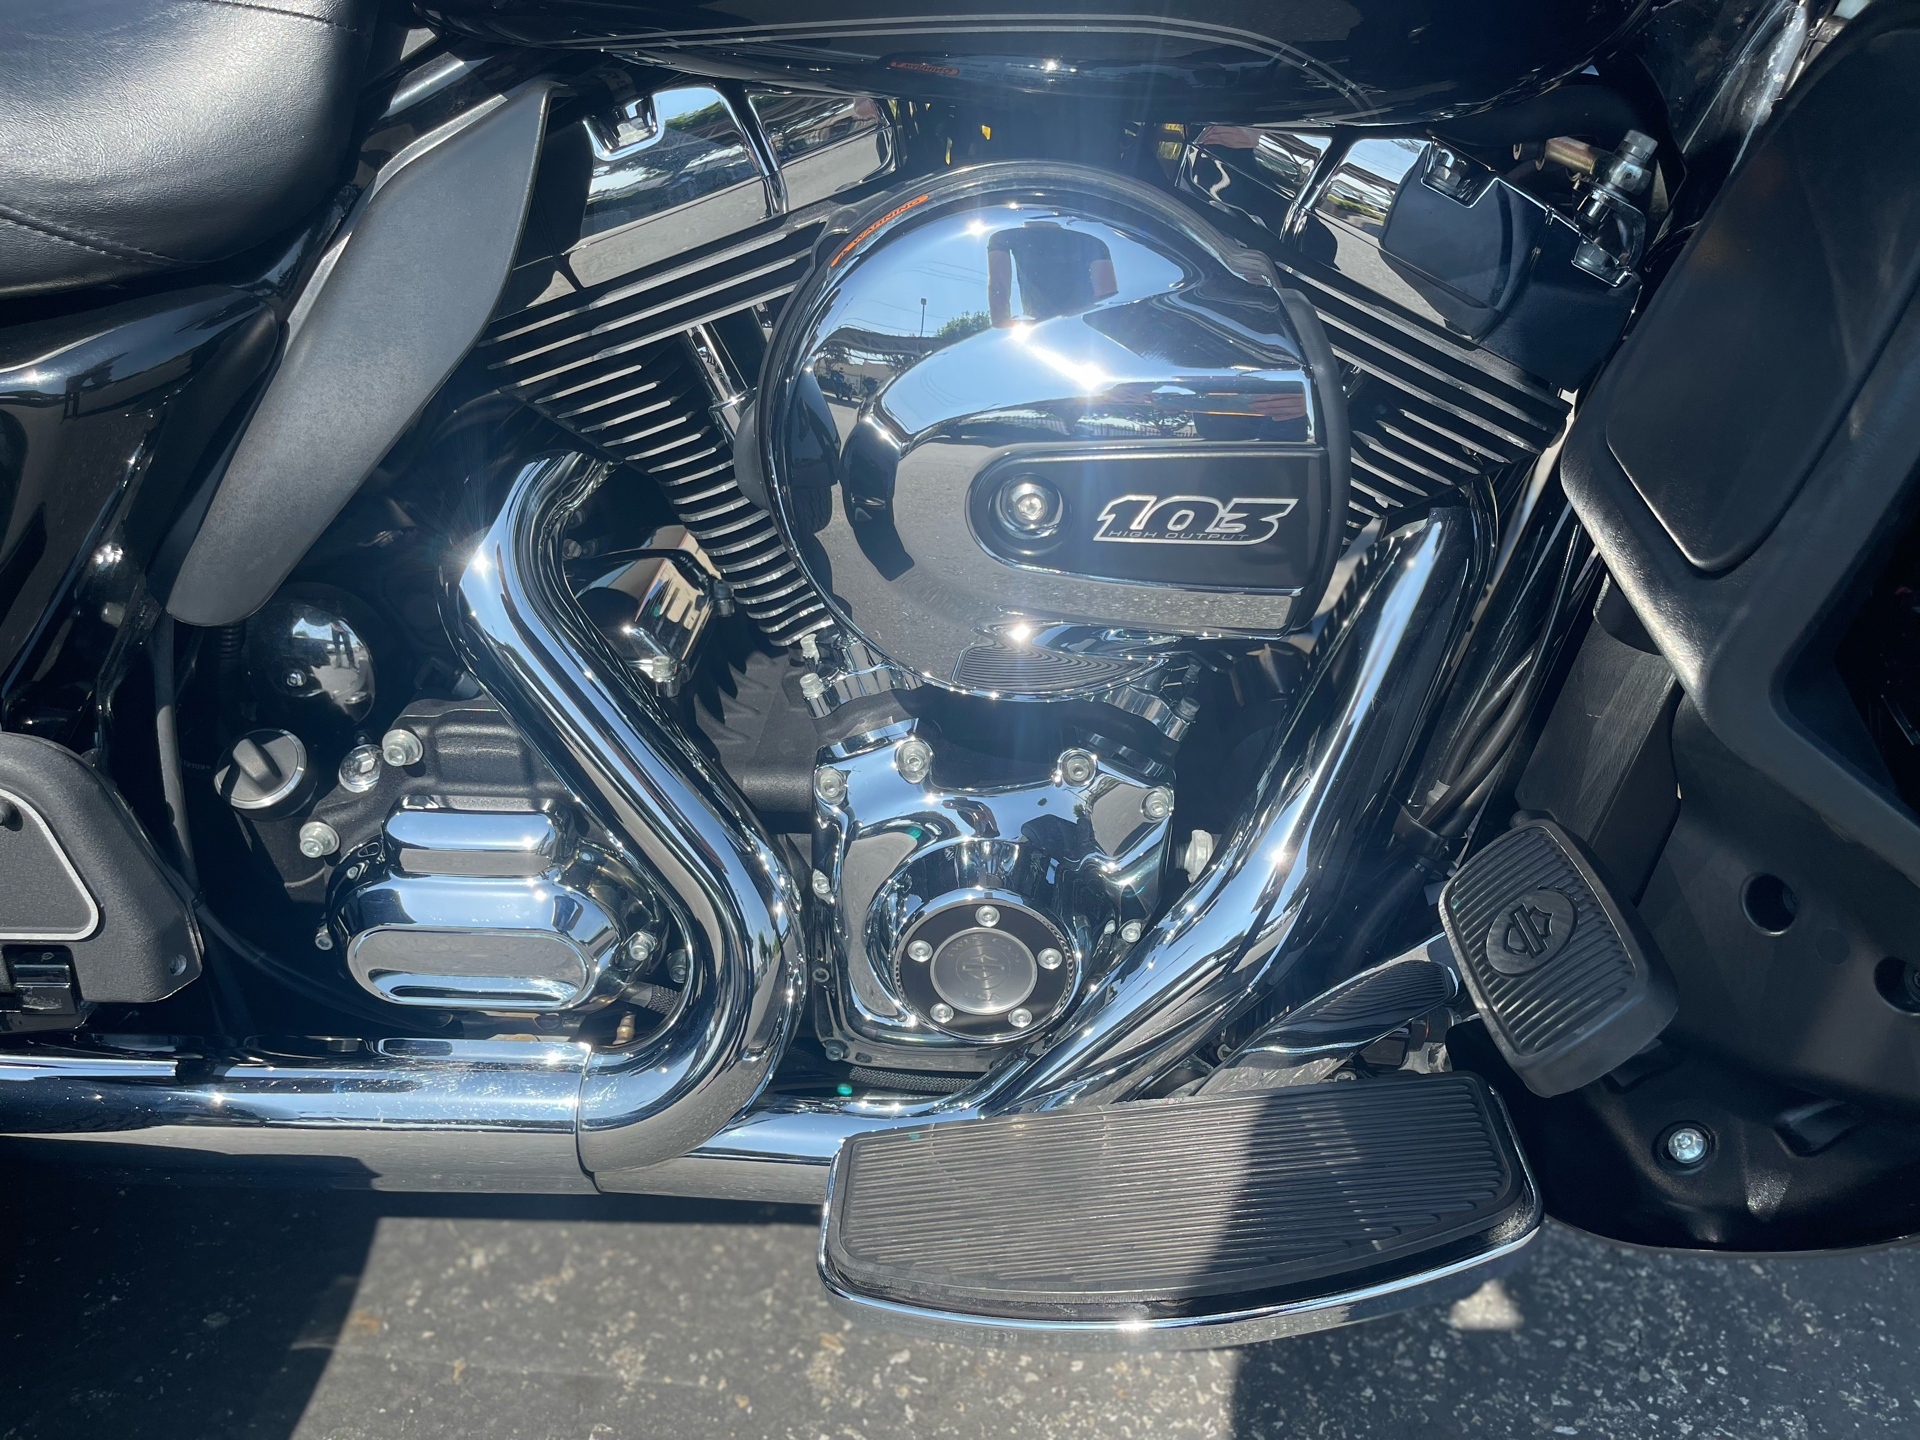 2015 Harley-Davidson Tri Glide® Ultra in Baldwin Park, California - Photo 11